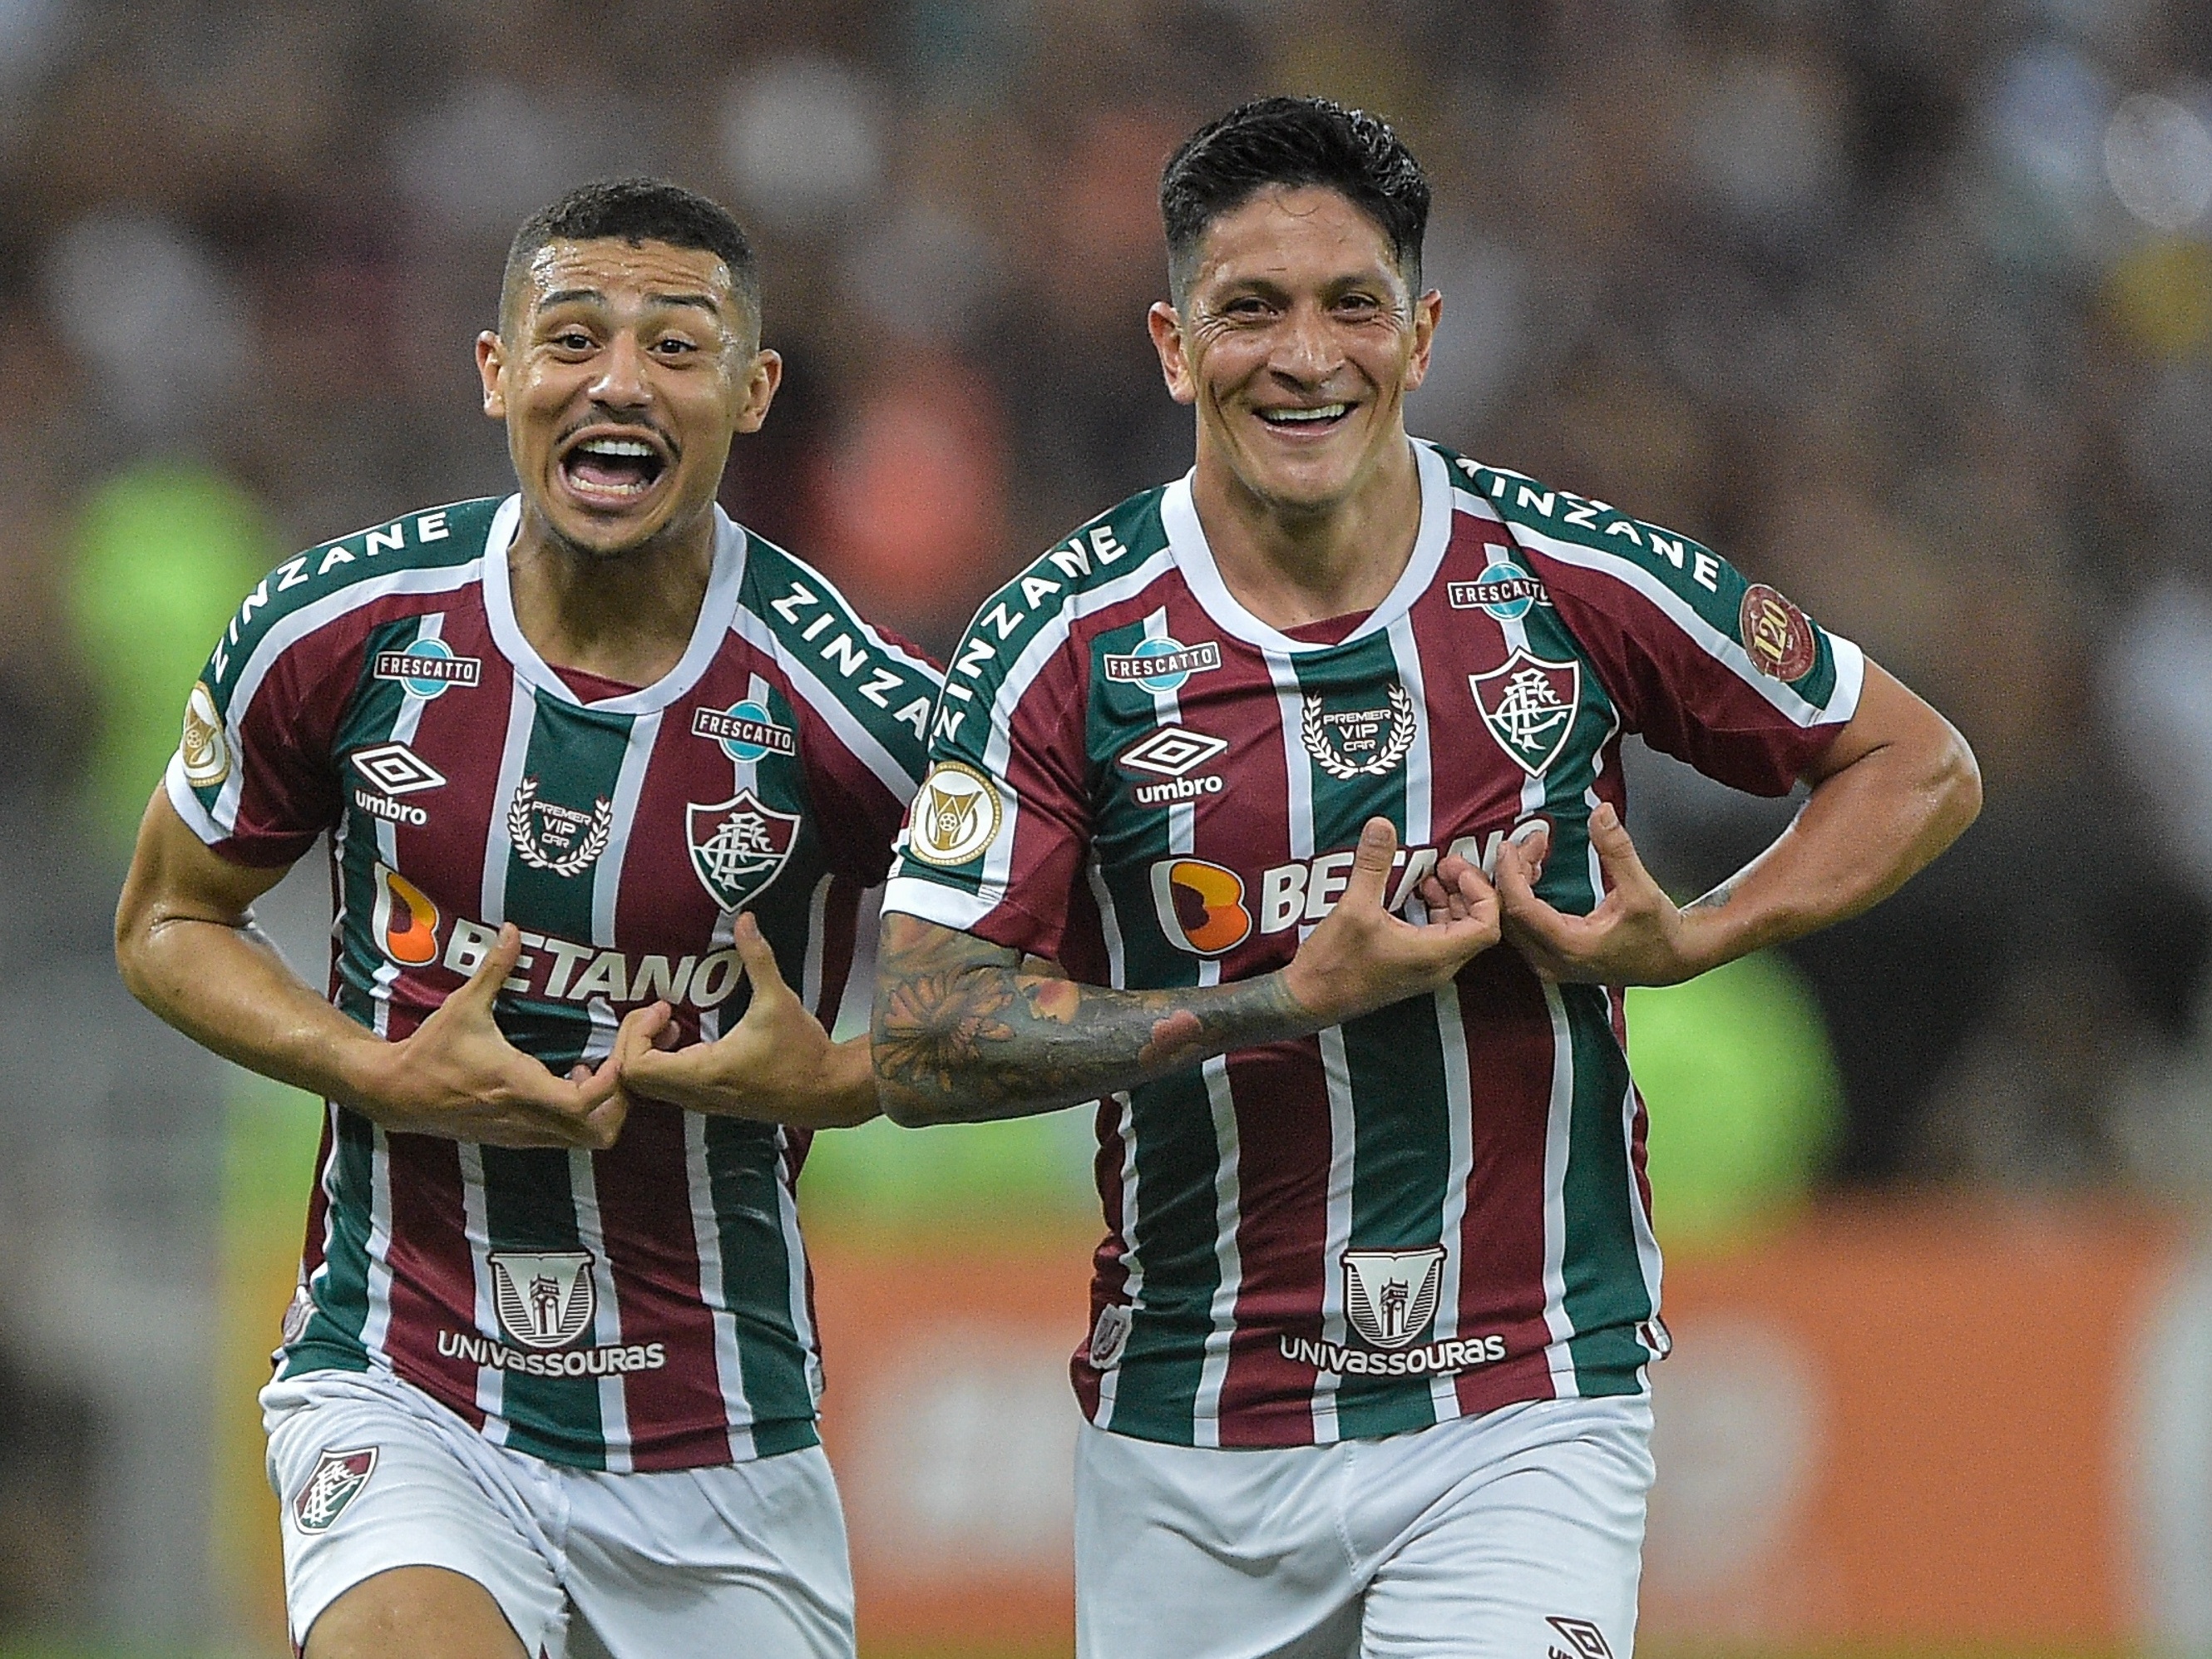 Simplesmente o adm do Fluminense Football Club viciado nas lives de GMOD. :  r/IFFans